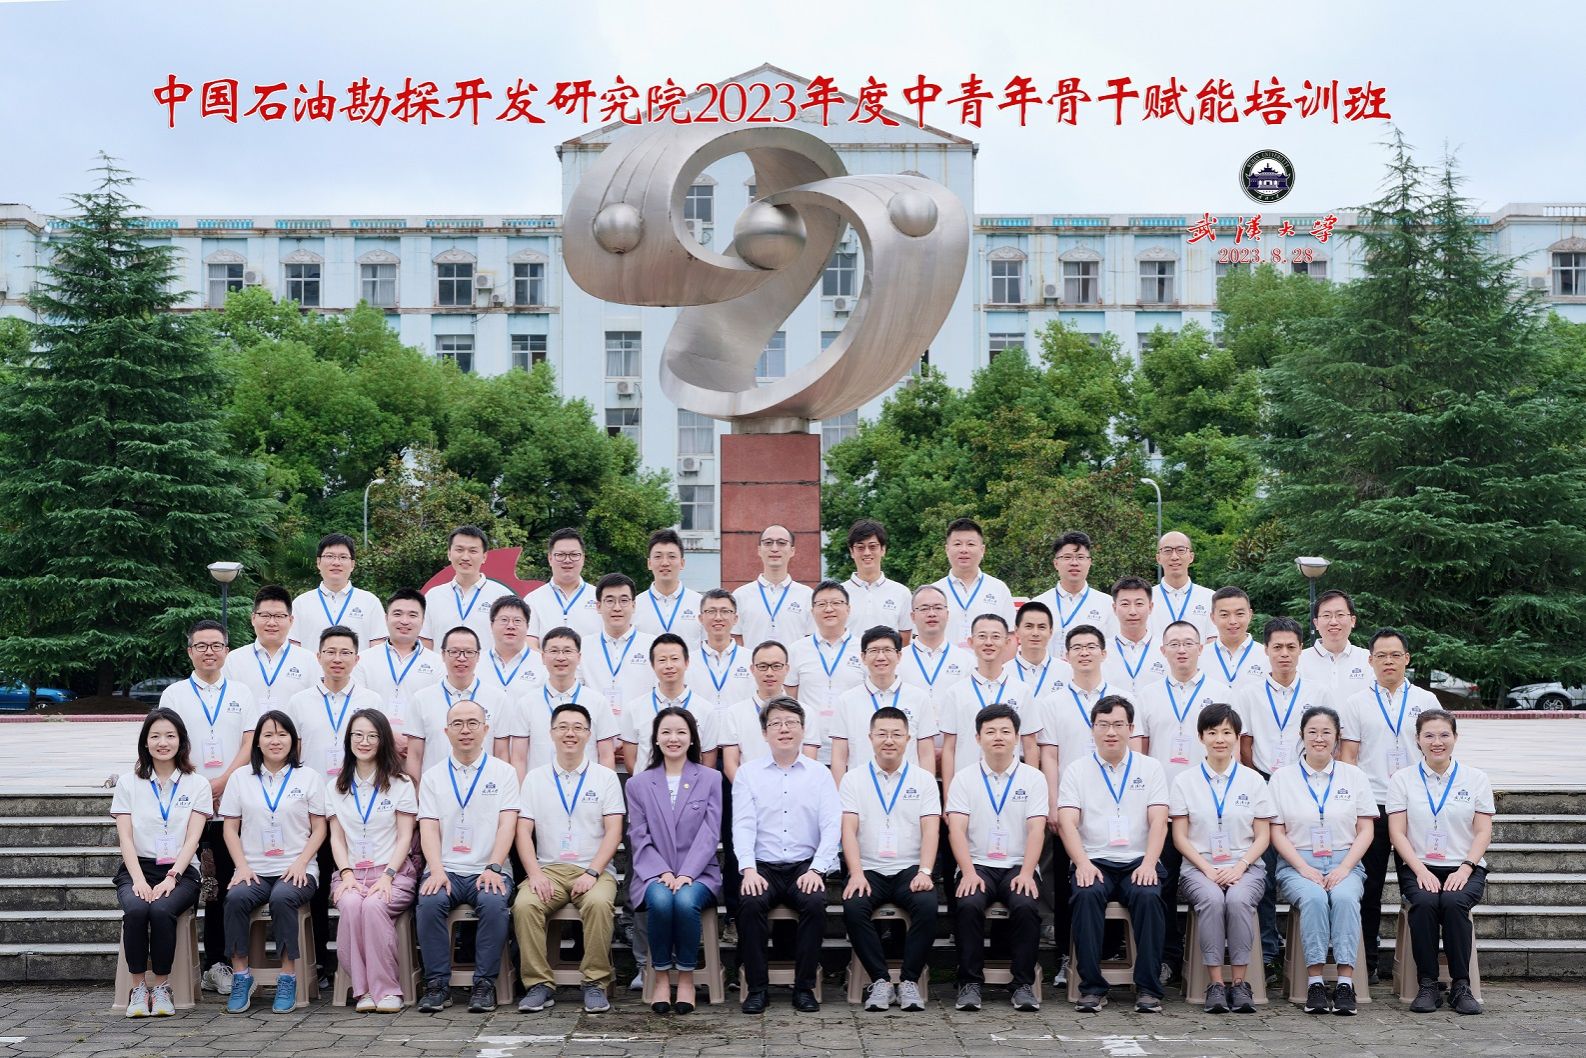 中国石油勘探开发研究院2023年度中青年骨干赋能培训班顺利结业